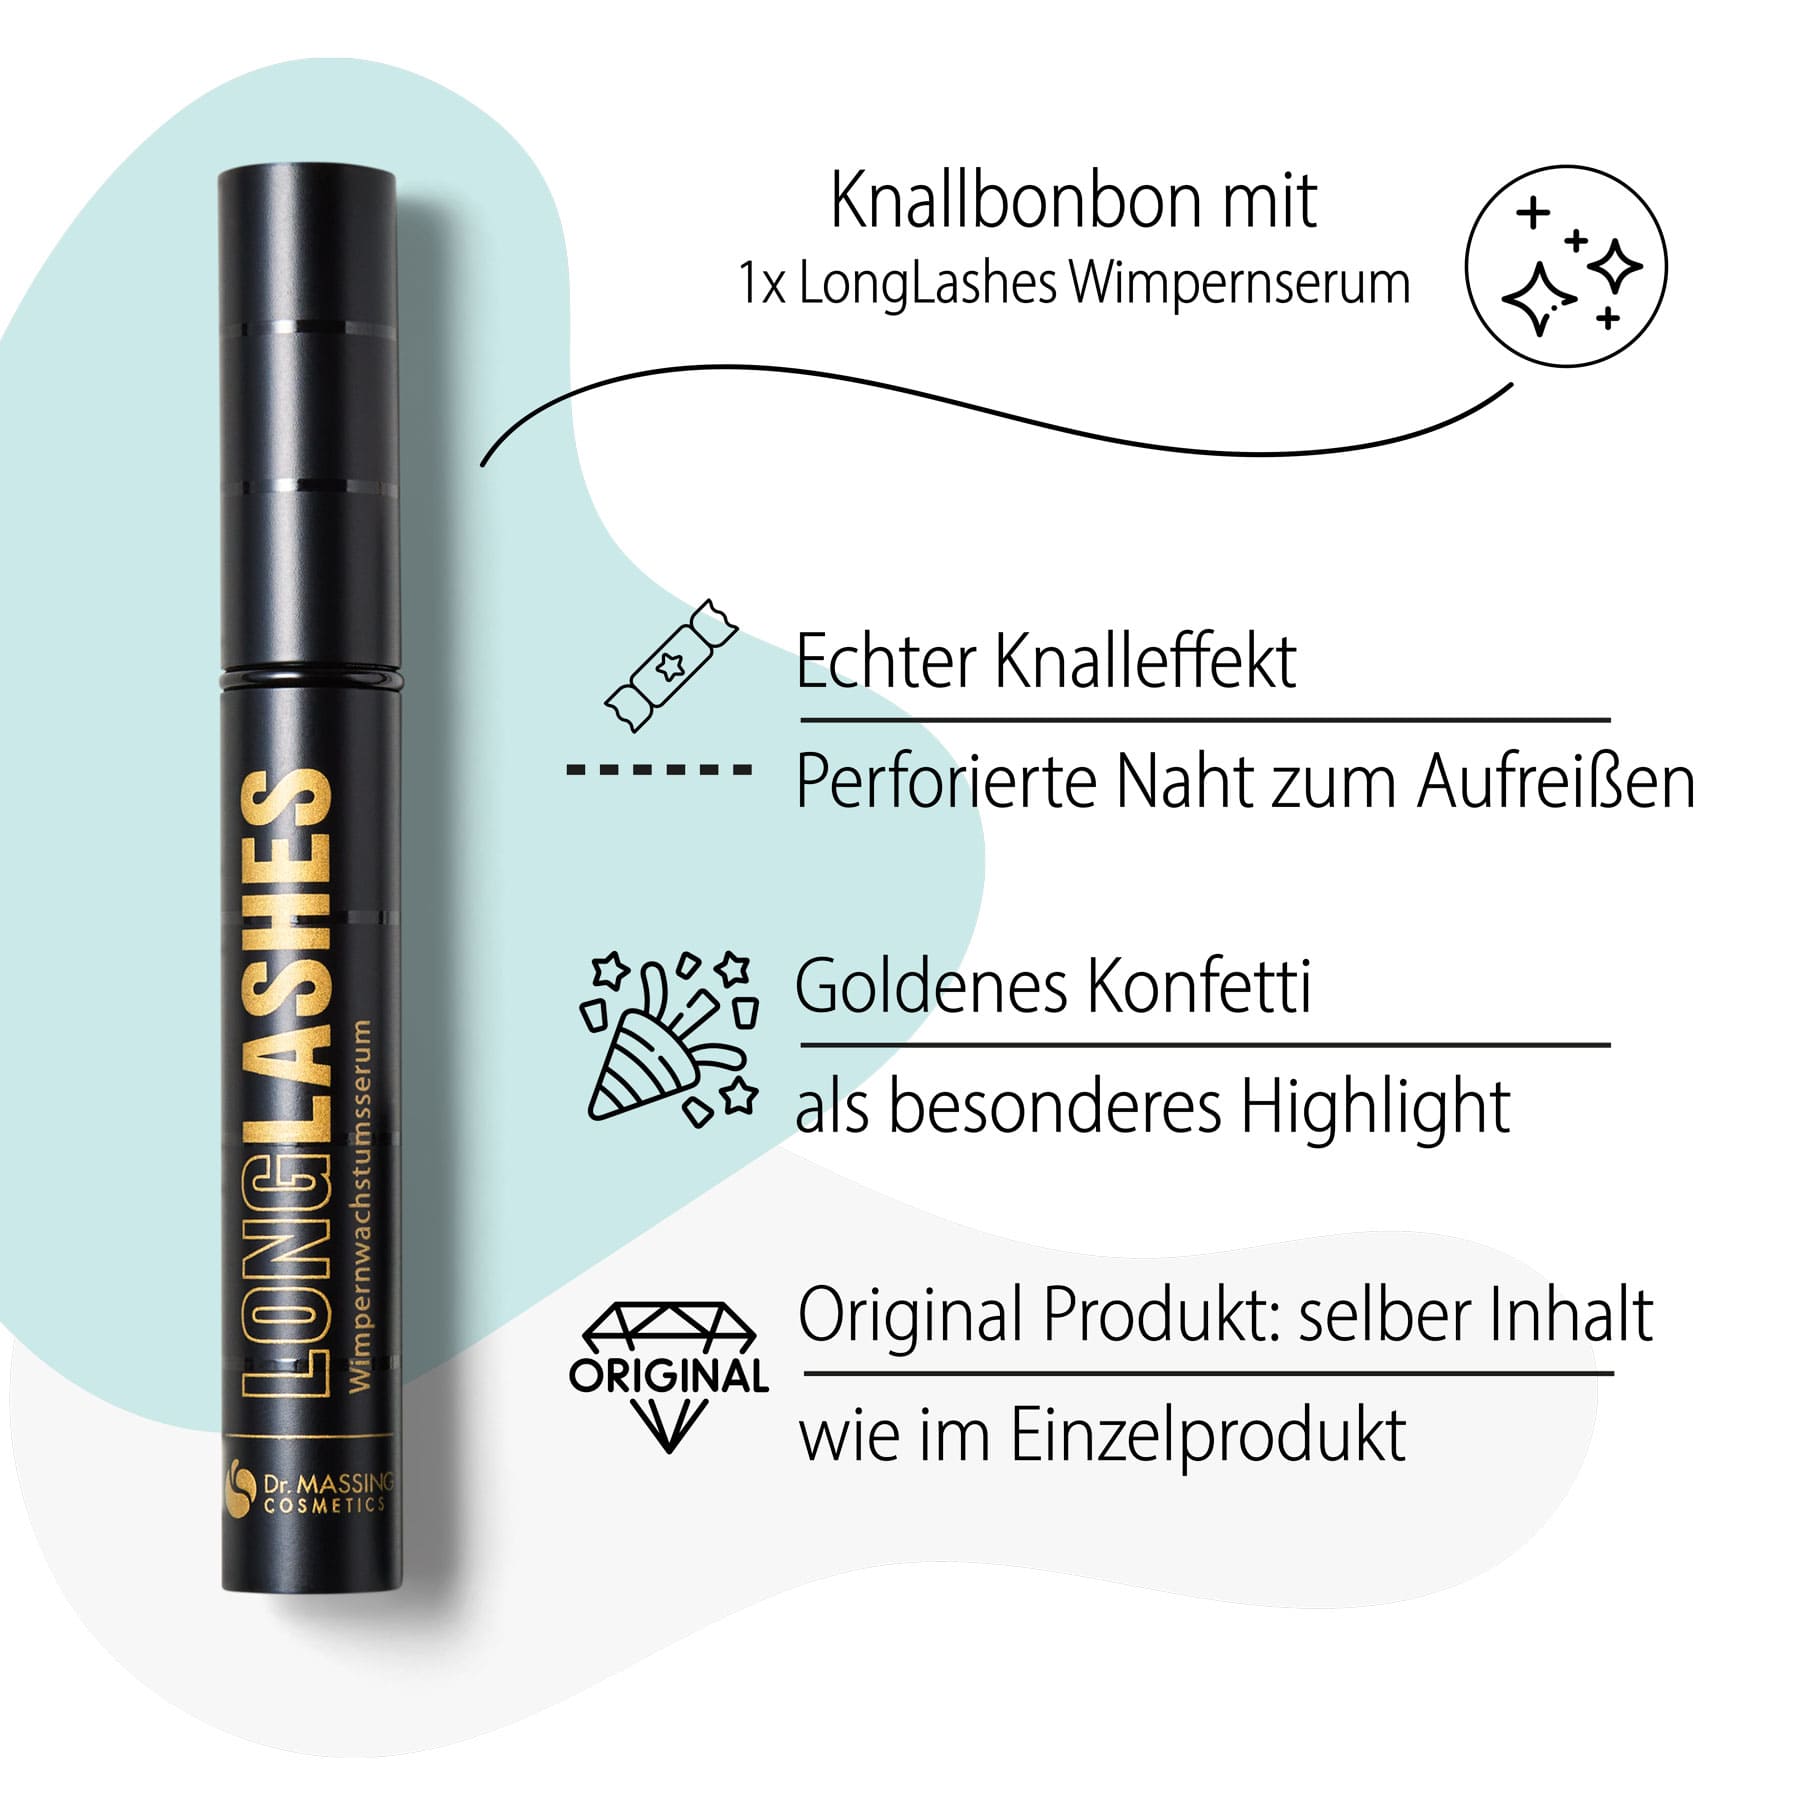 Dr. Massing Knallbonbon schwarz LongLashes Special Edition Geschenkbox Details Vorteile LongLashes Wimpernserum